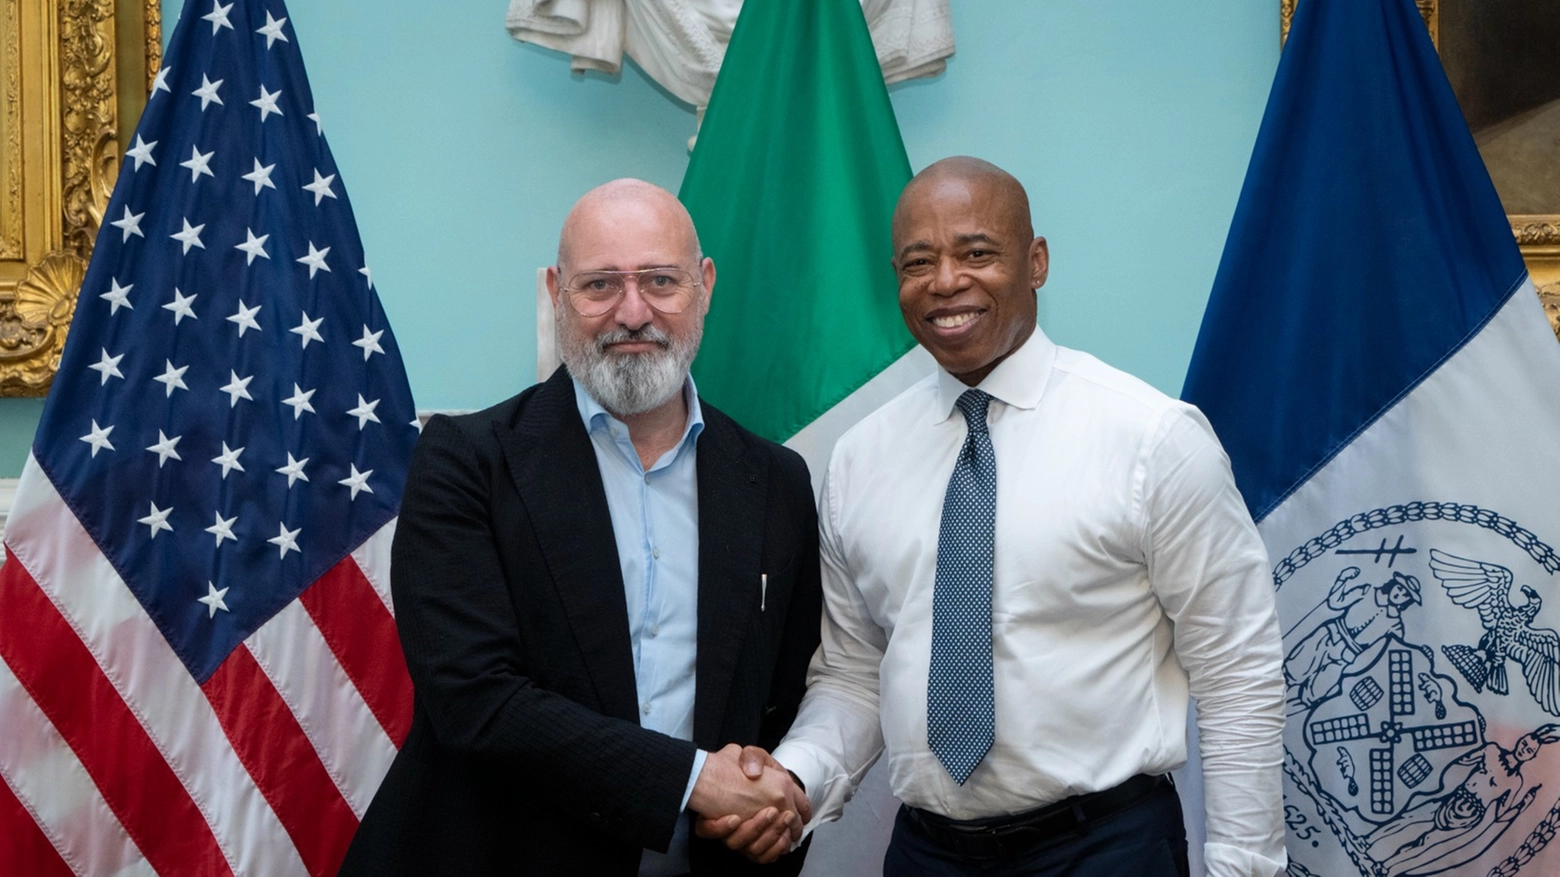 Il presidente Stefano Bonaccini ha incontrato il sindaco di New York Eric Leroy Adams